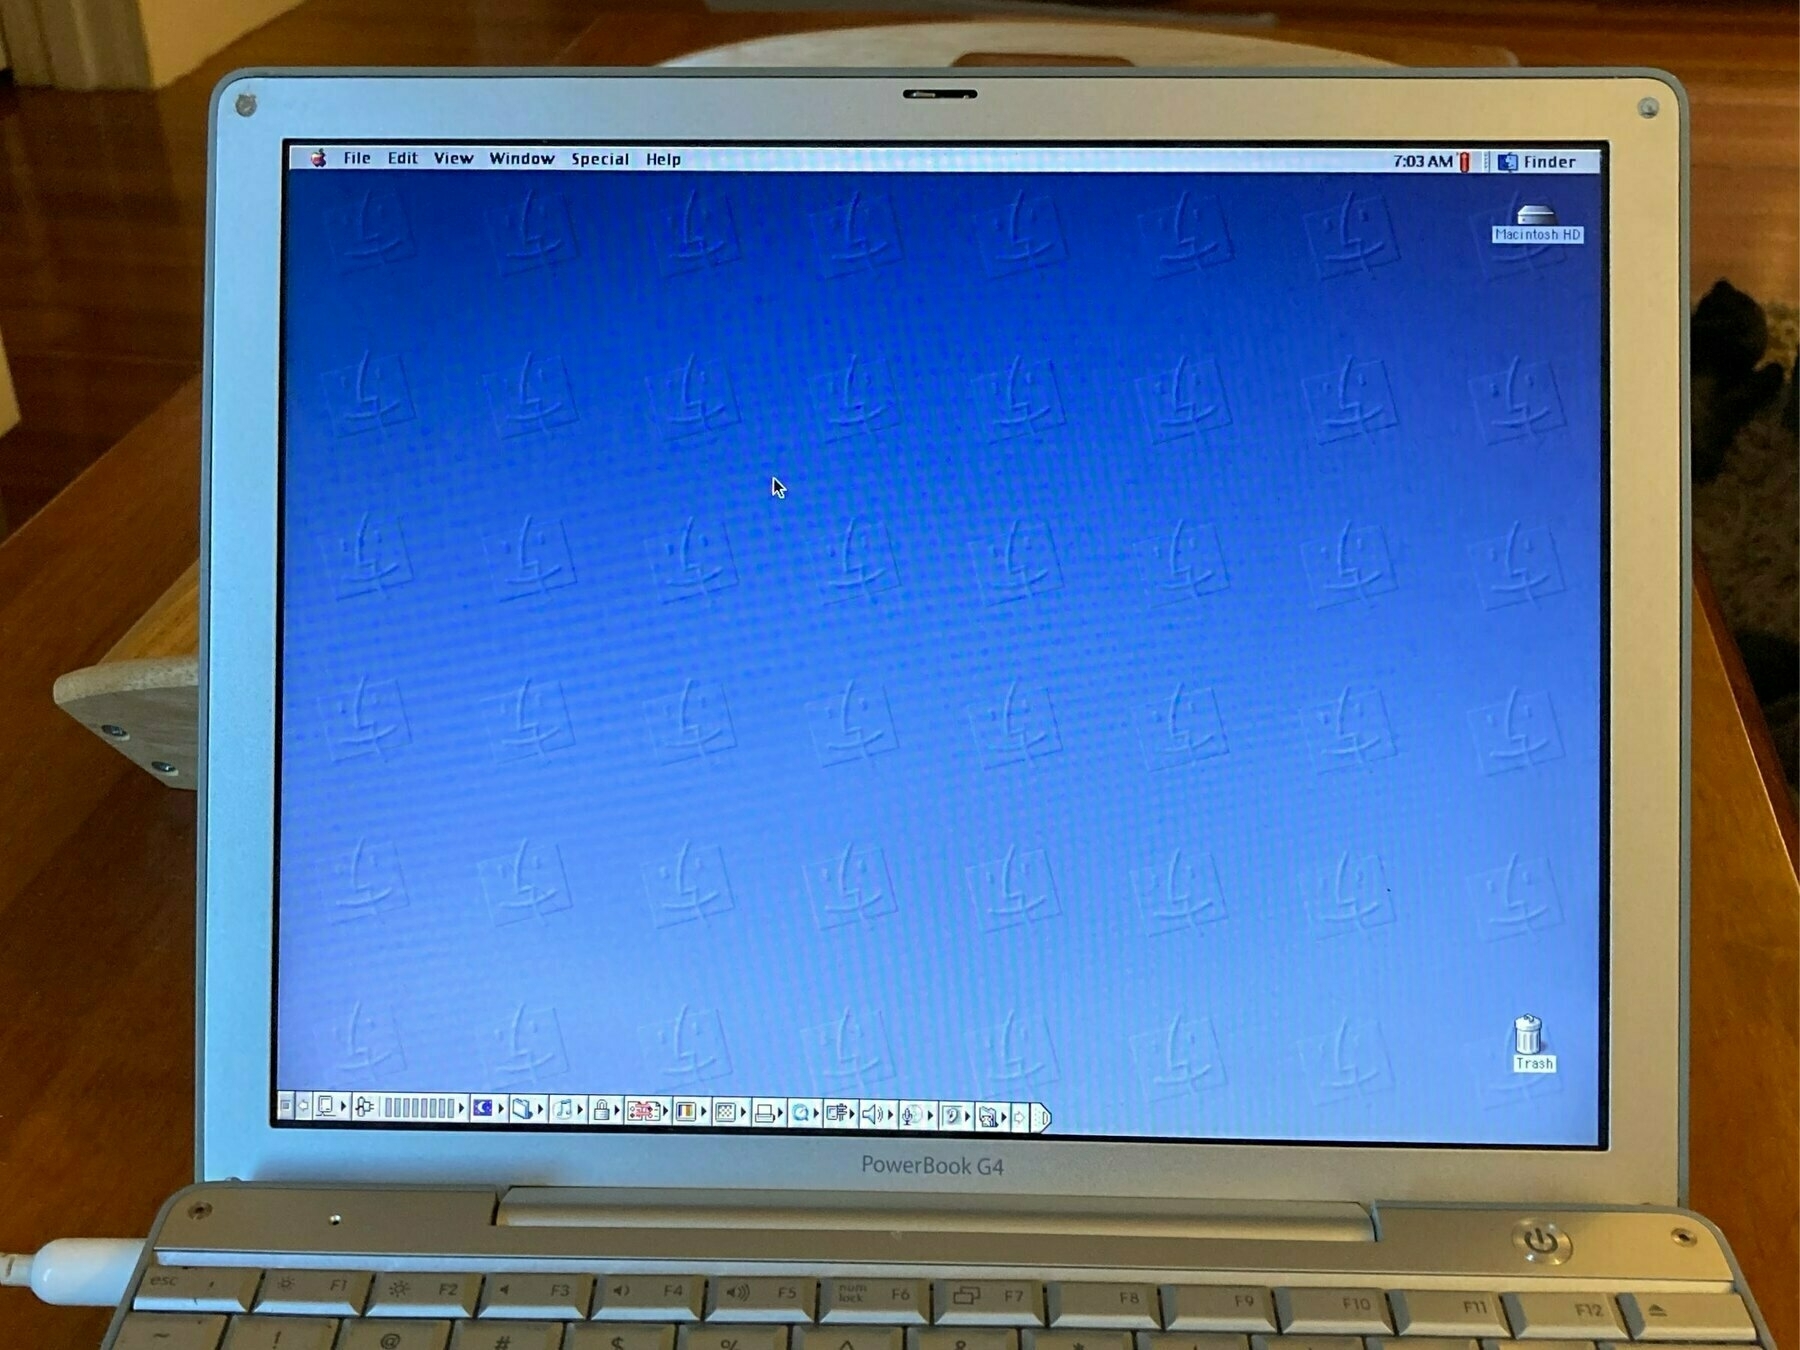 Mac OS 9.2.2 on a 12 inch PowerBook G4